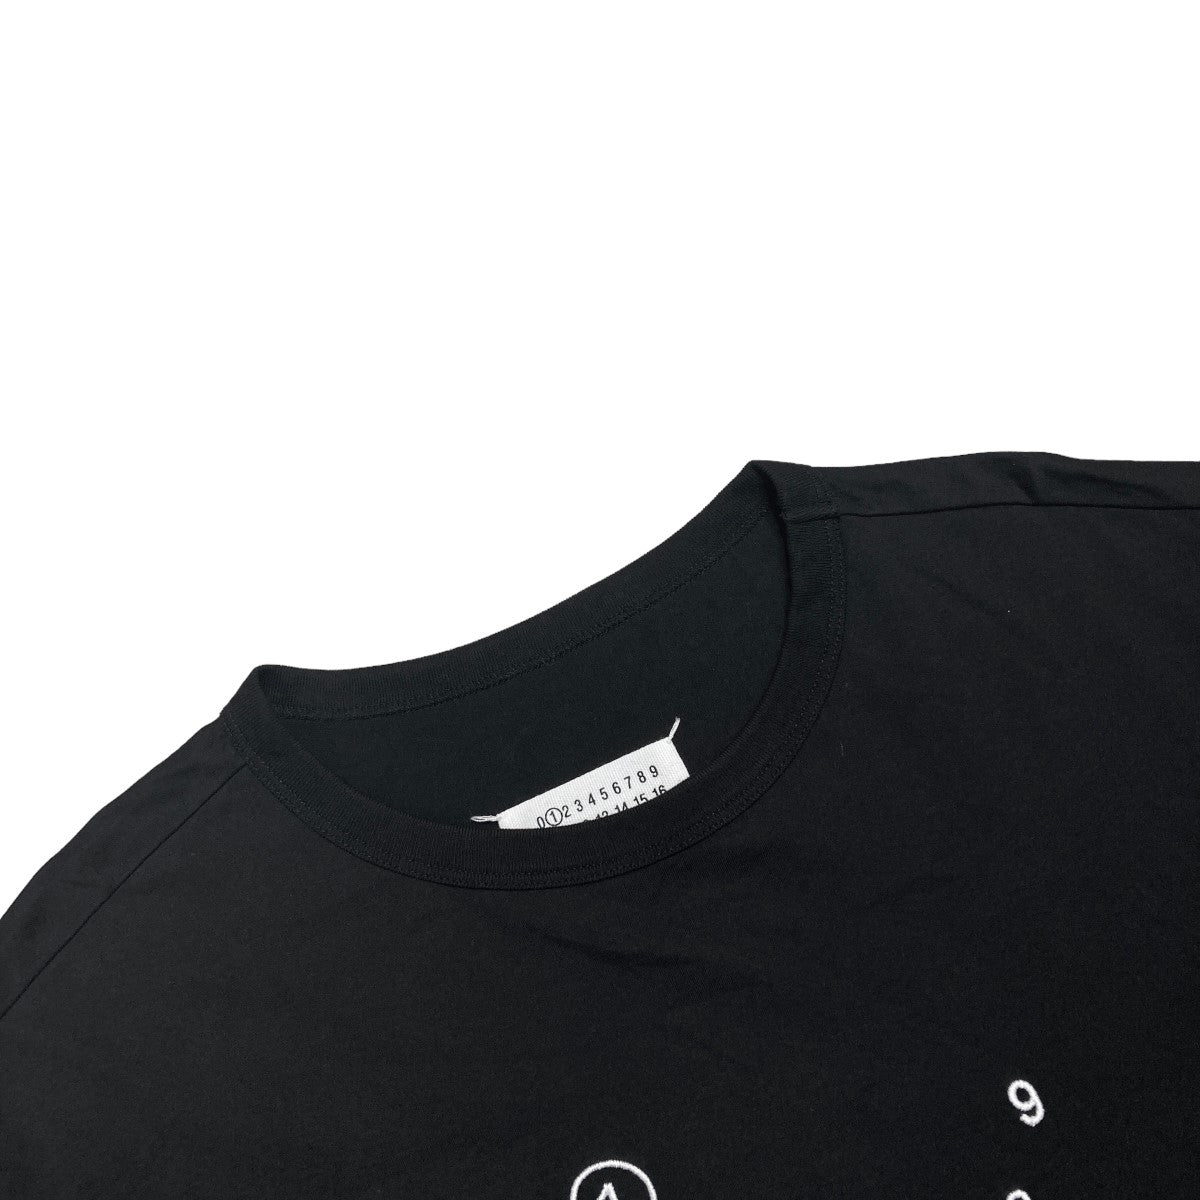 カレンダーグラフィック ロゴTシャツ 半袖Tシャツ S50GC0684